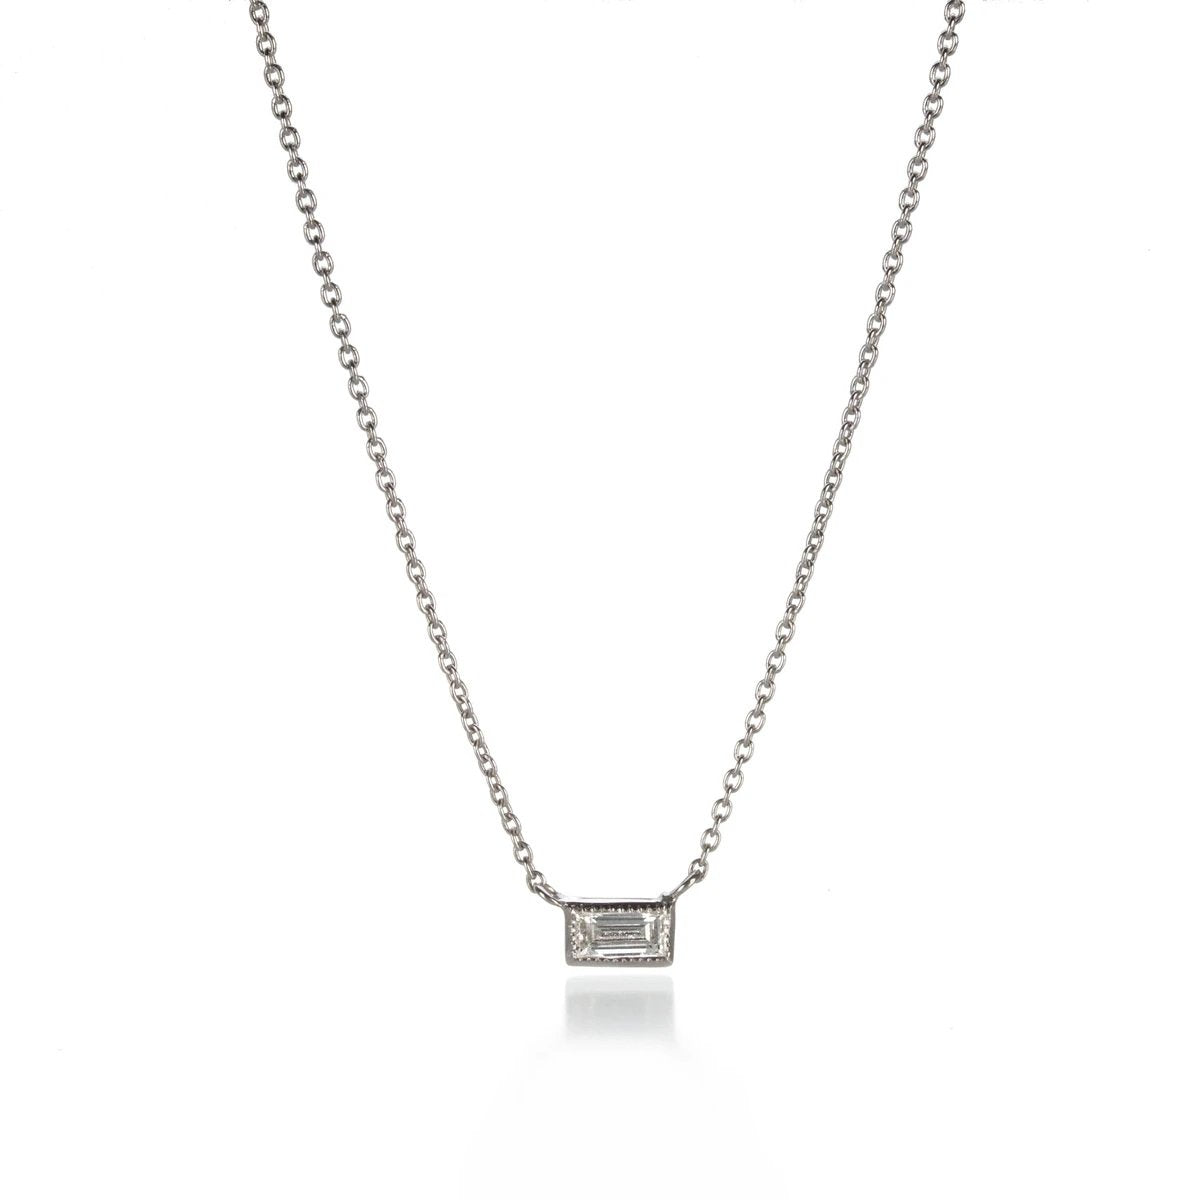 Silhouette Single Stone Baguette Diamond Necklace